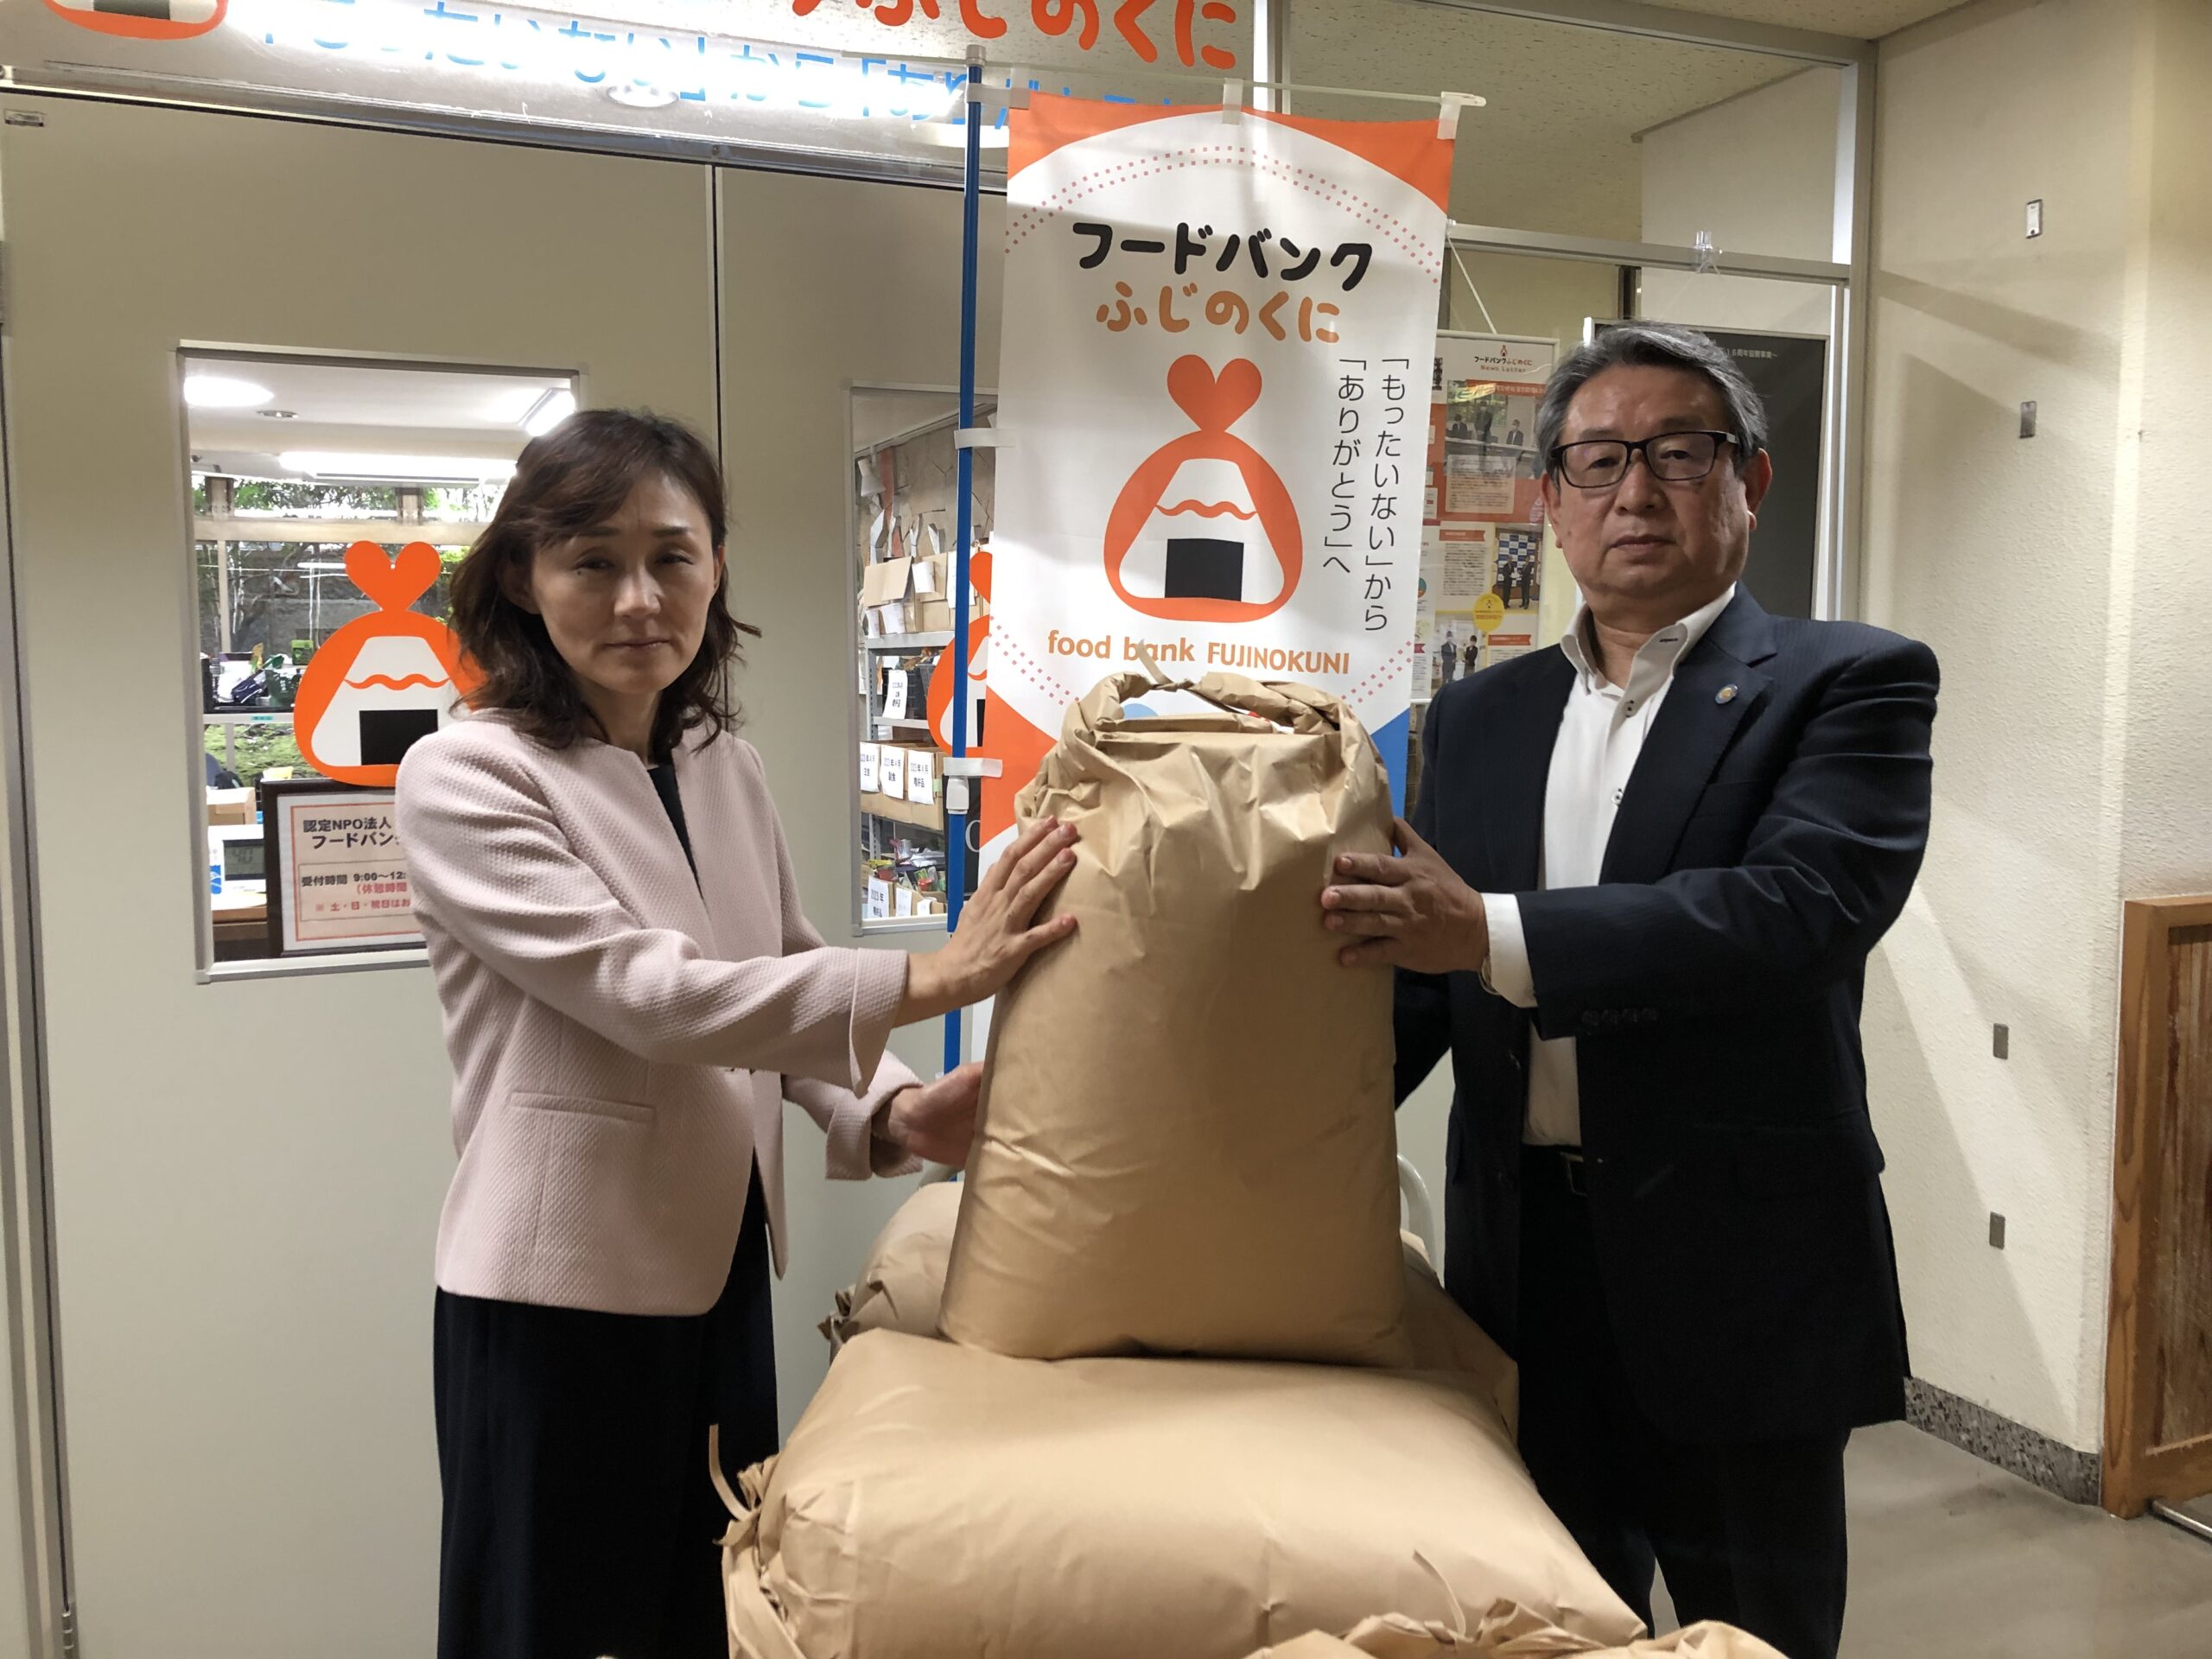 株式会社ヨシケイからたくさんのお米を寄贈していただきました。